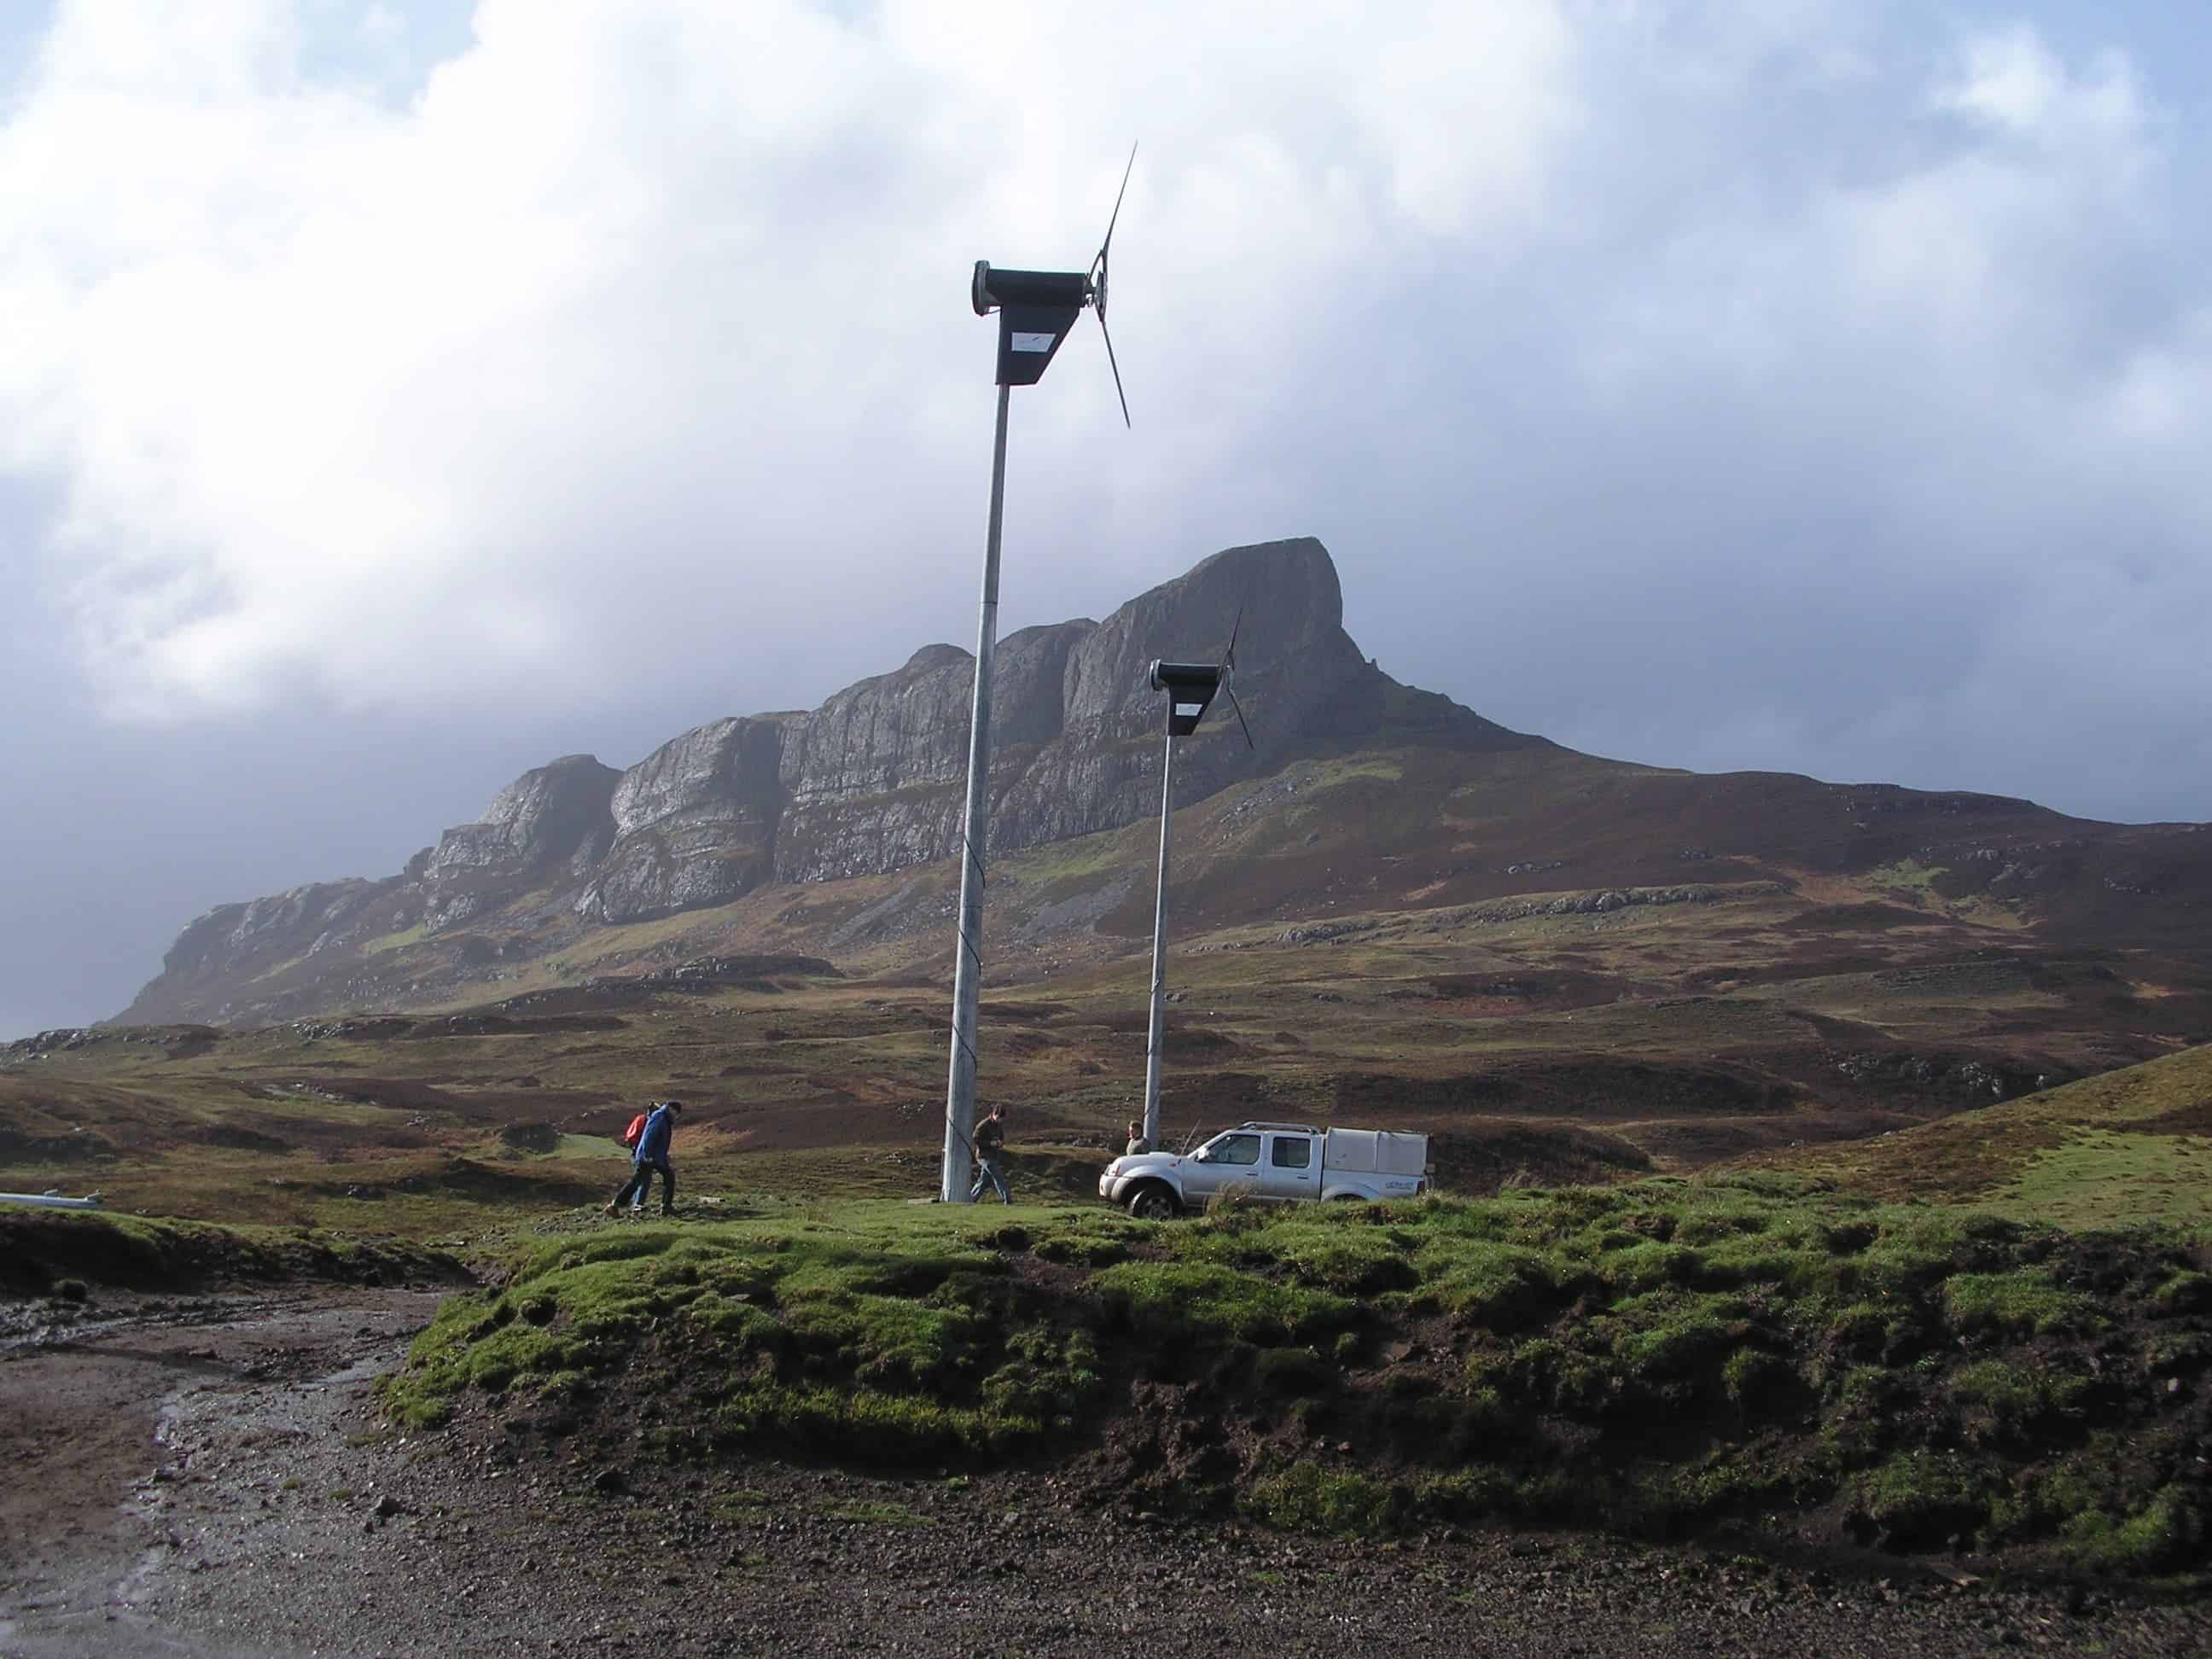 Wind turbines in Eigg. Image credits: W. L. Tarbert.